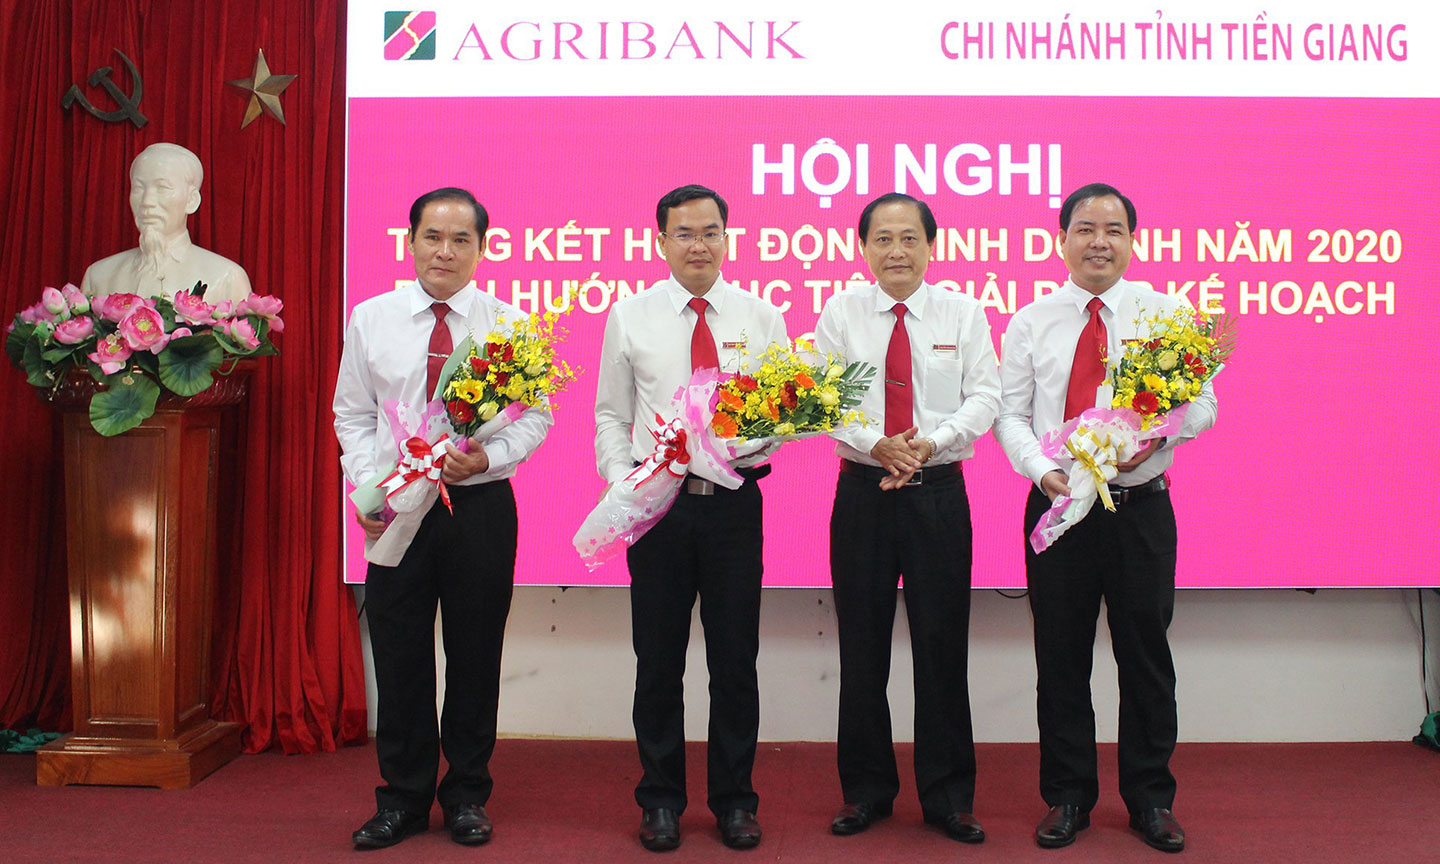 Giám đốc Agribank Tiền Giang khen thưởng các chi nhánh đạt thành tích xuất sắc (Cái Bè, Châu Thành và Chợ Gạo)